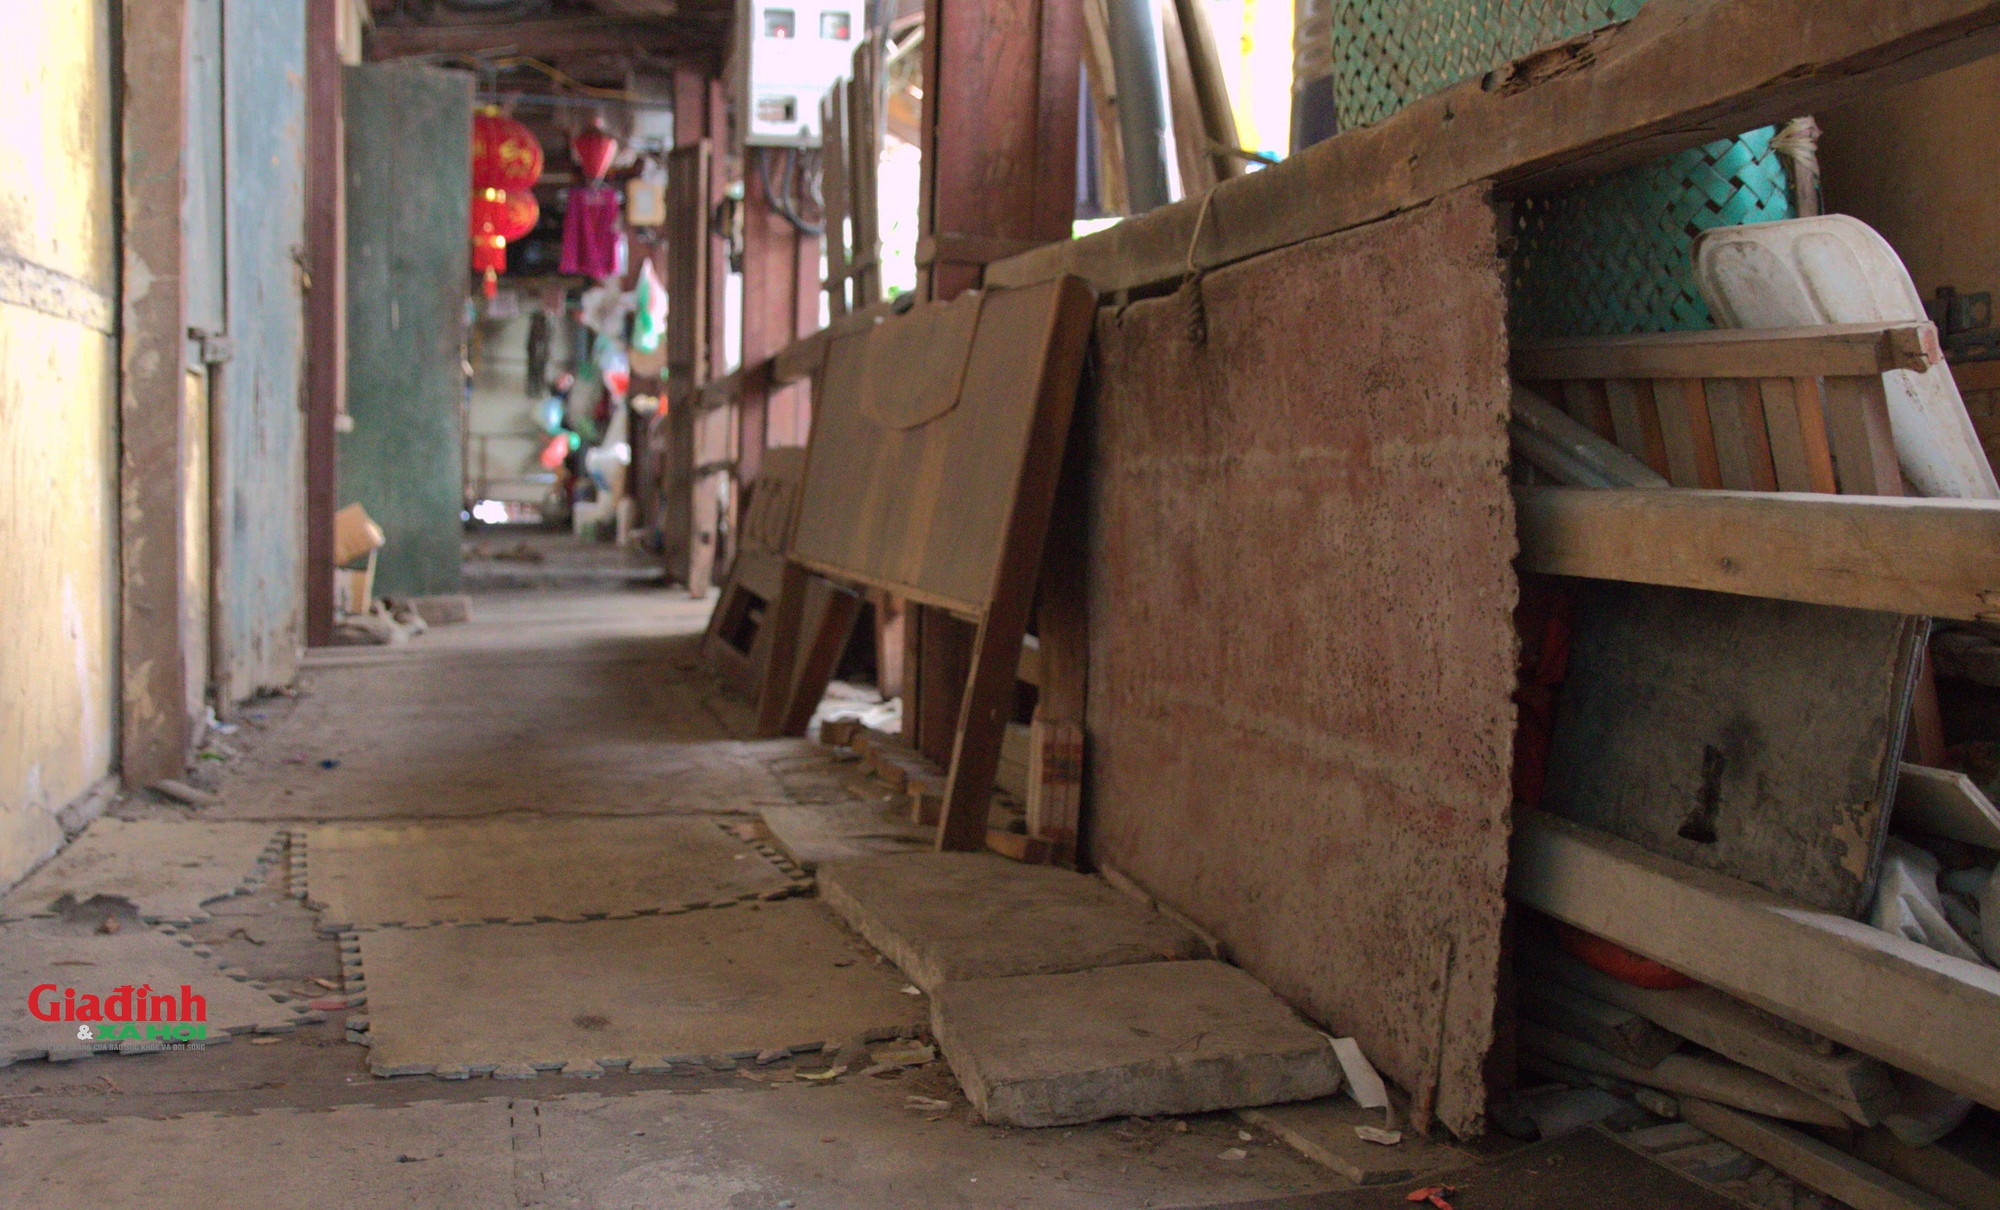 Cuộc sống của người dân bên trong khu tập thể bằng gỗ 70 tuổi 'chờ sập' ở Hà Nội - Ảnh 9.